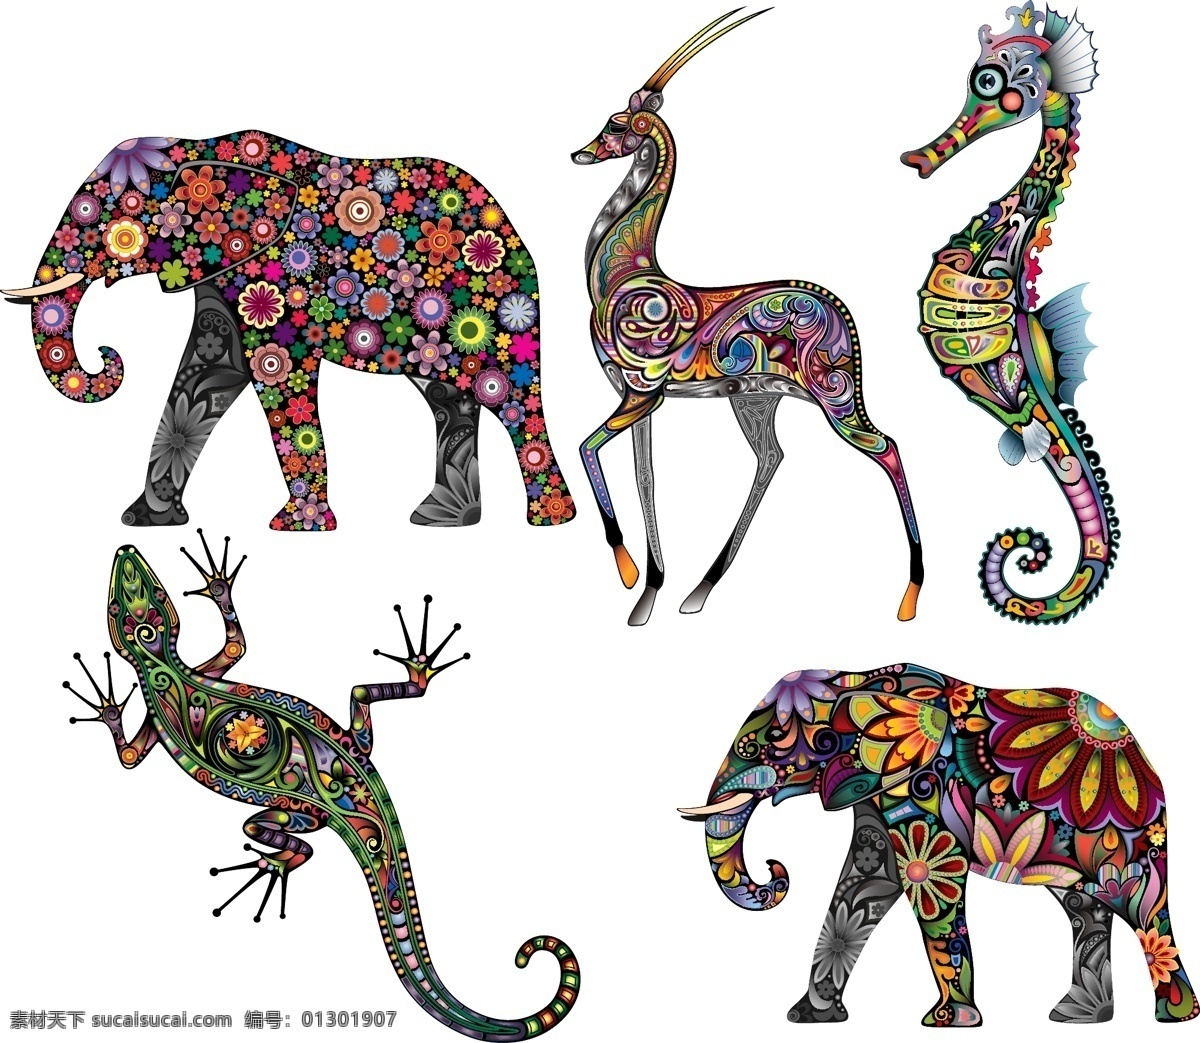 彩色动物图案 彩色动物 纹身刺青图案 矢量素材 矢量图 创意设计 图案 动物 彩色 炫彩 炫丽 刺青 纹身 花纹 大象 壁虎 海马 羚羊